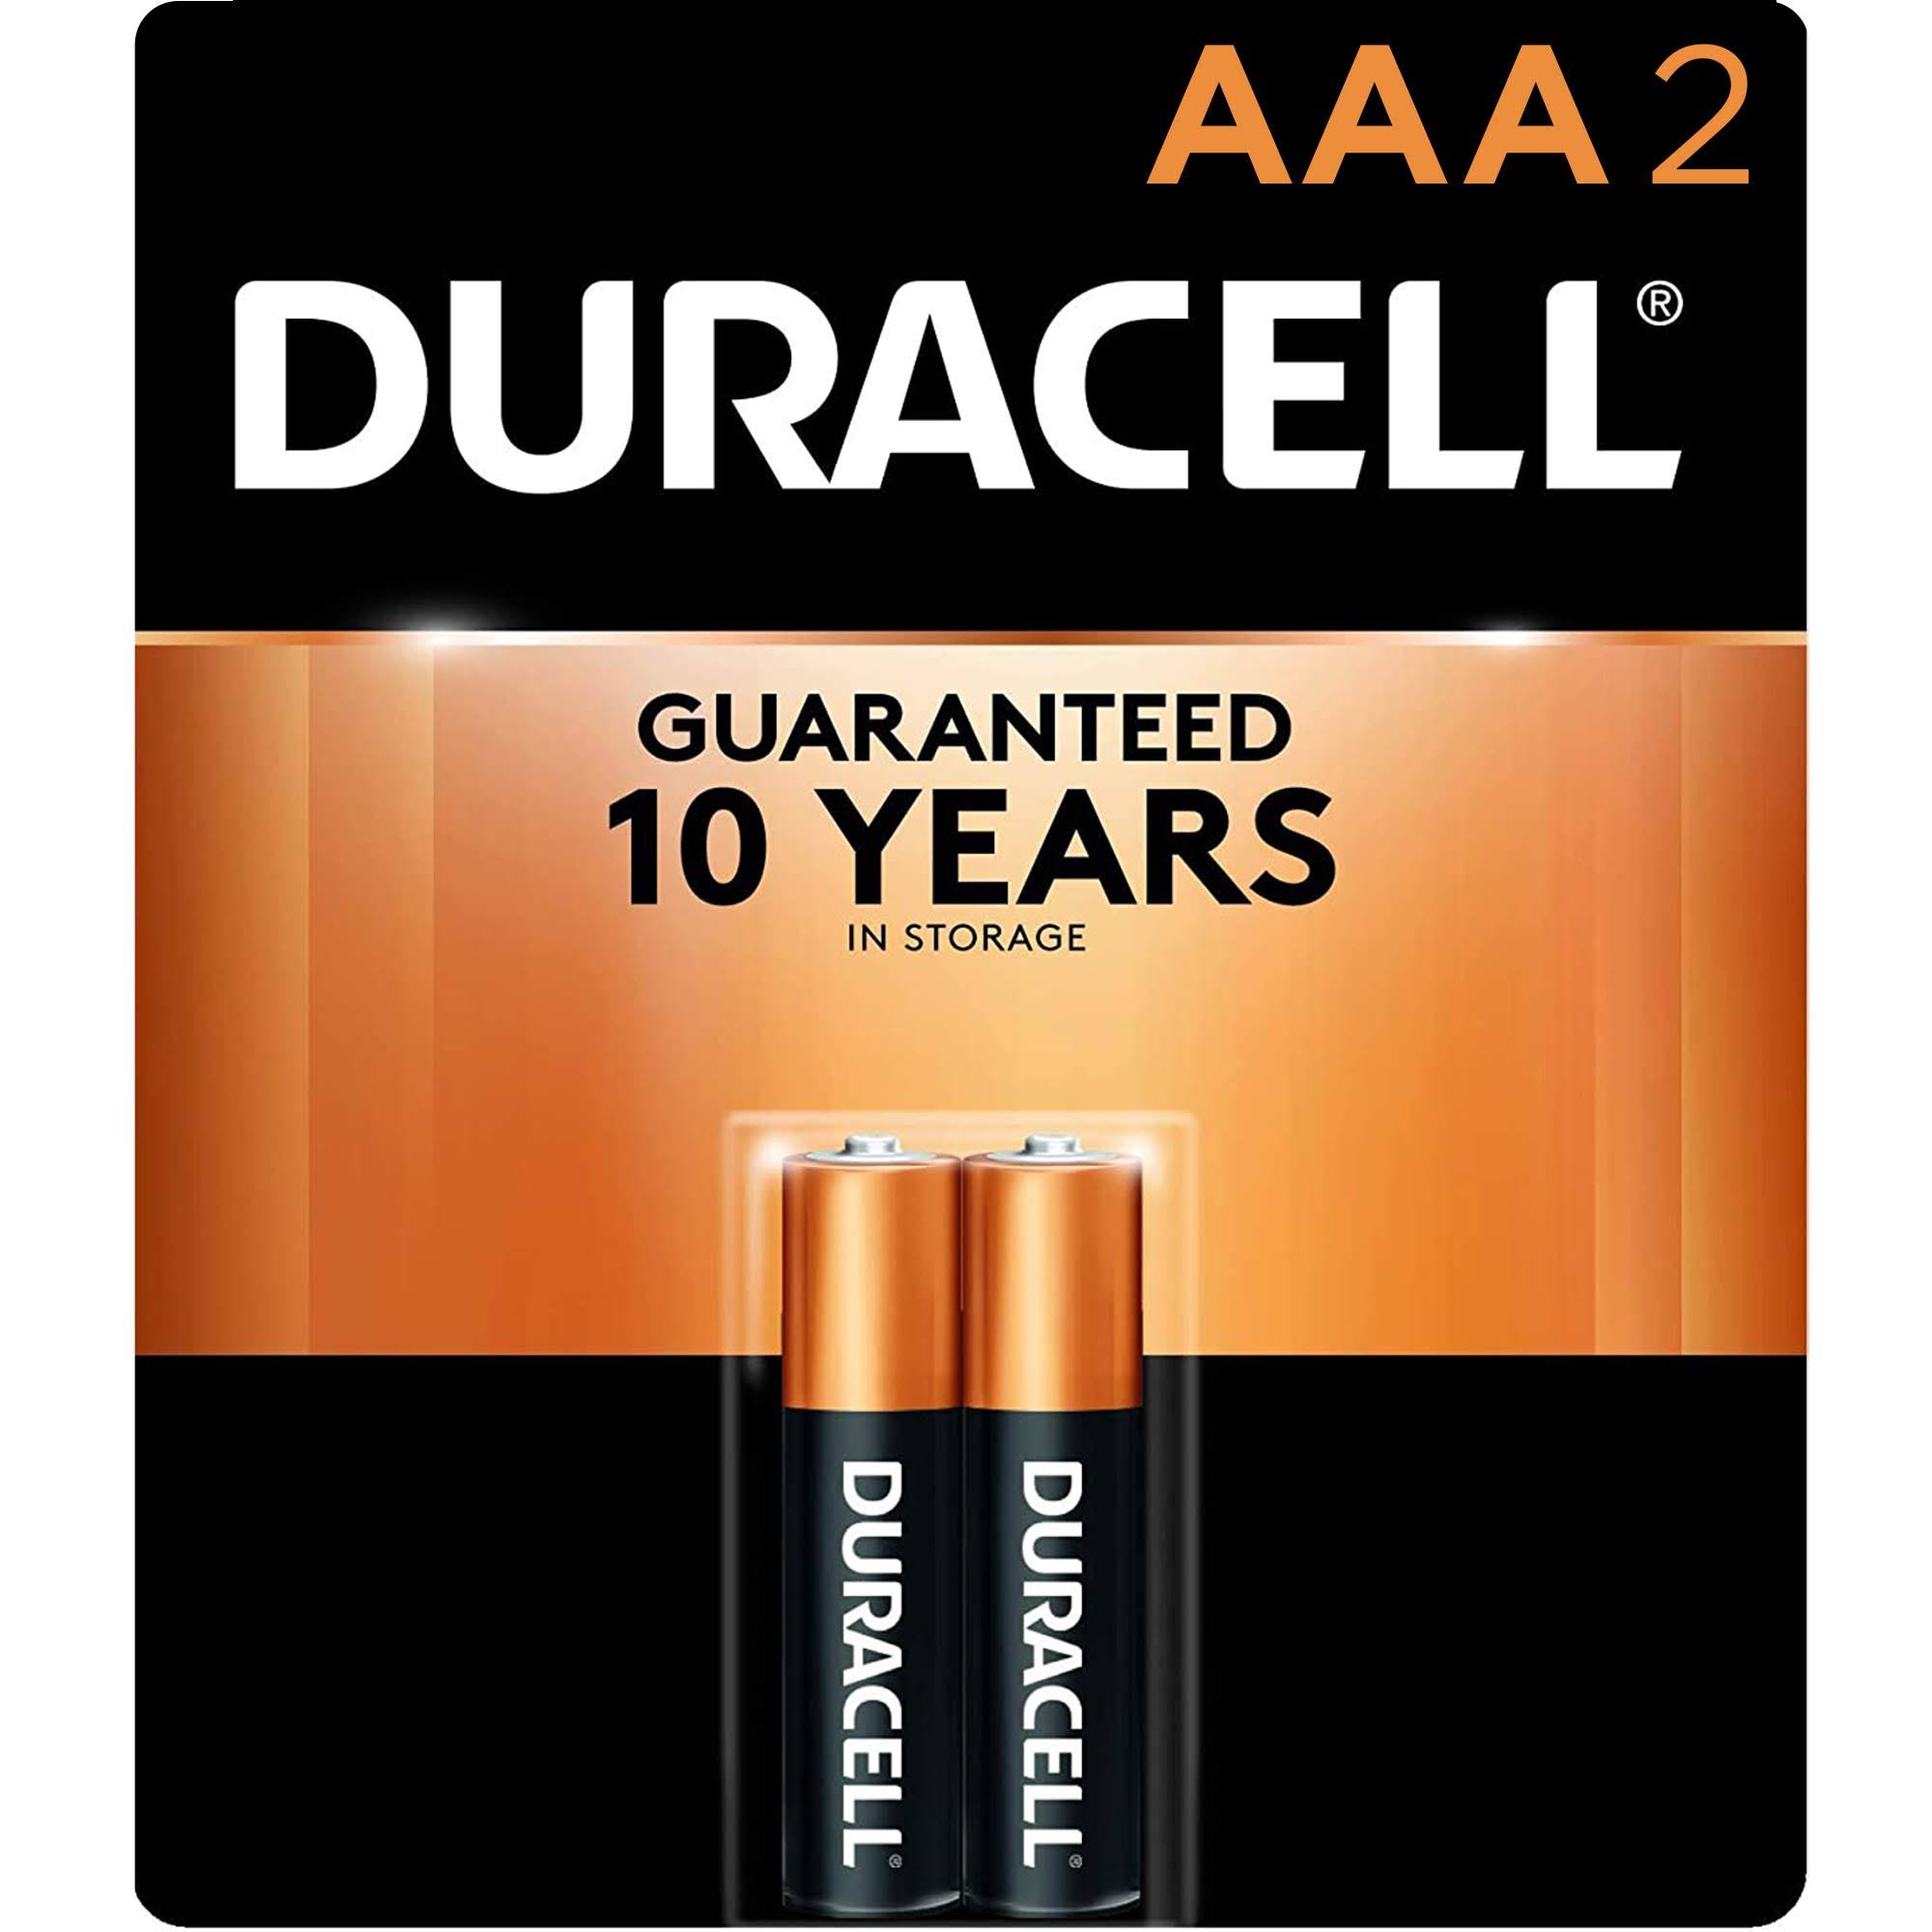 Duracell AAA Alkaline Batteries - 2 pack